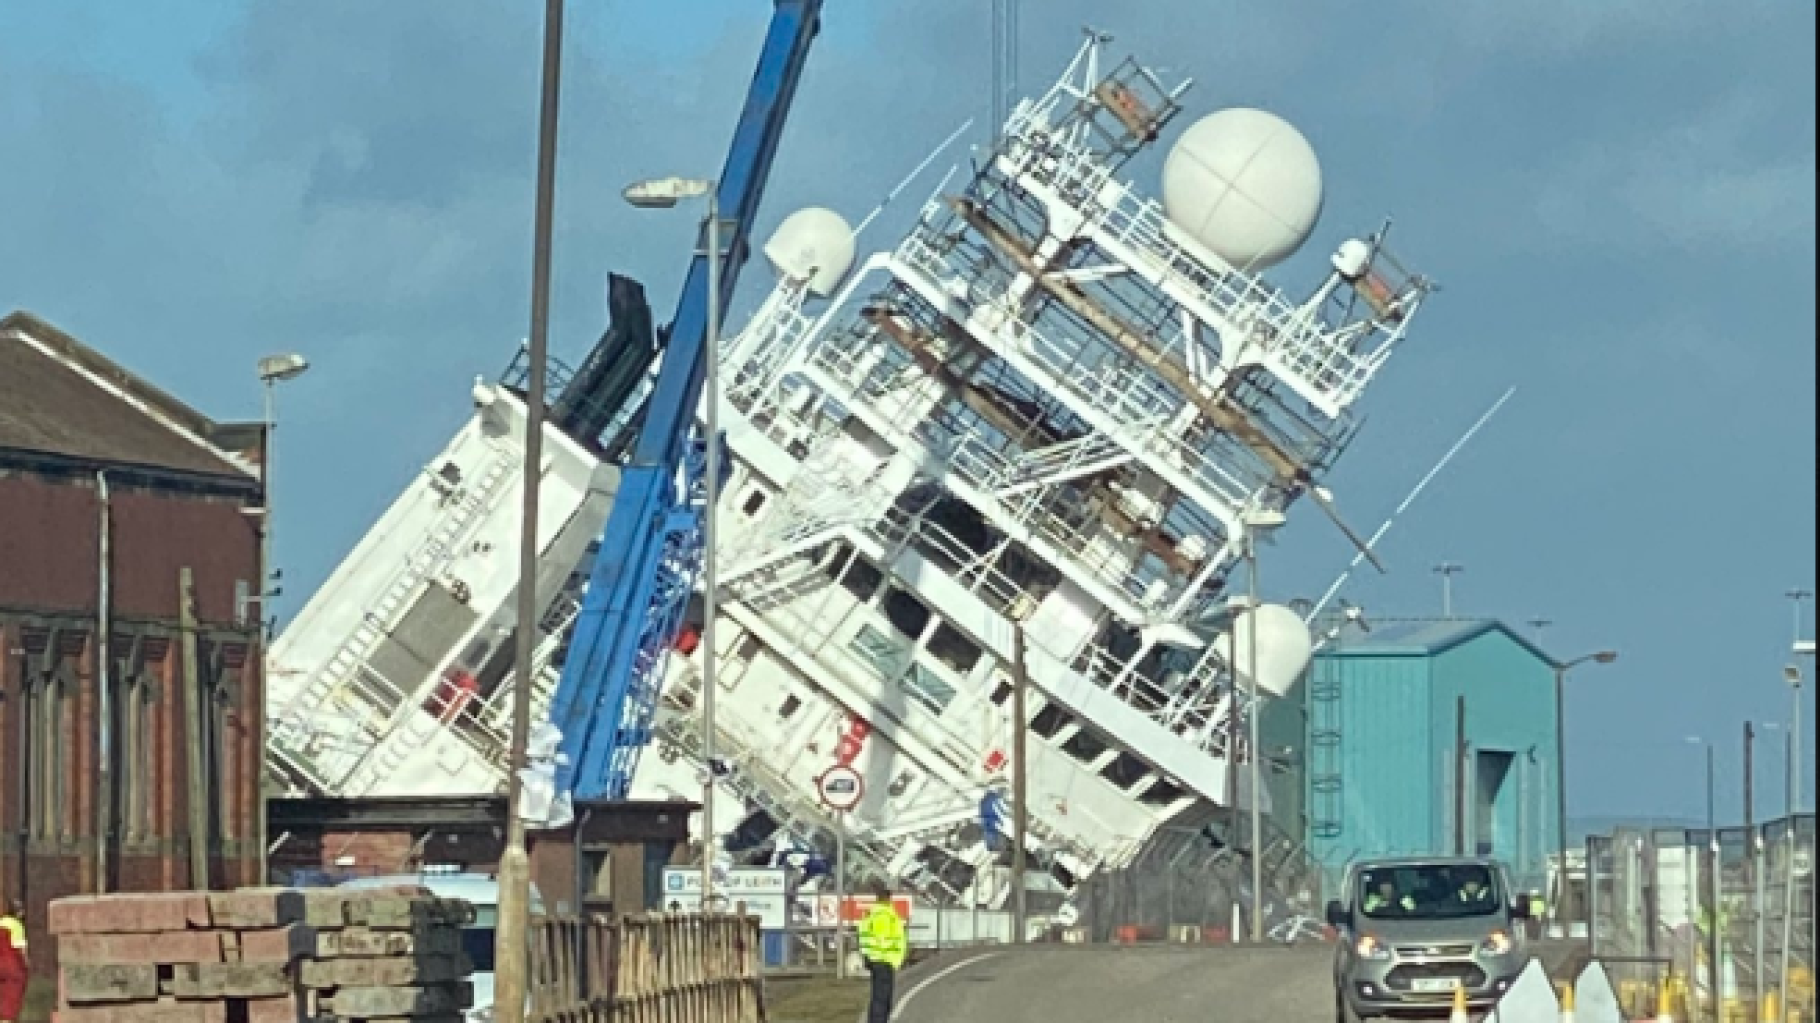 En Edimburgo, el barco Petrel volcó en un astillero dejando varios heridos